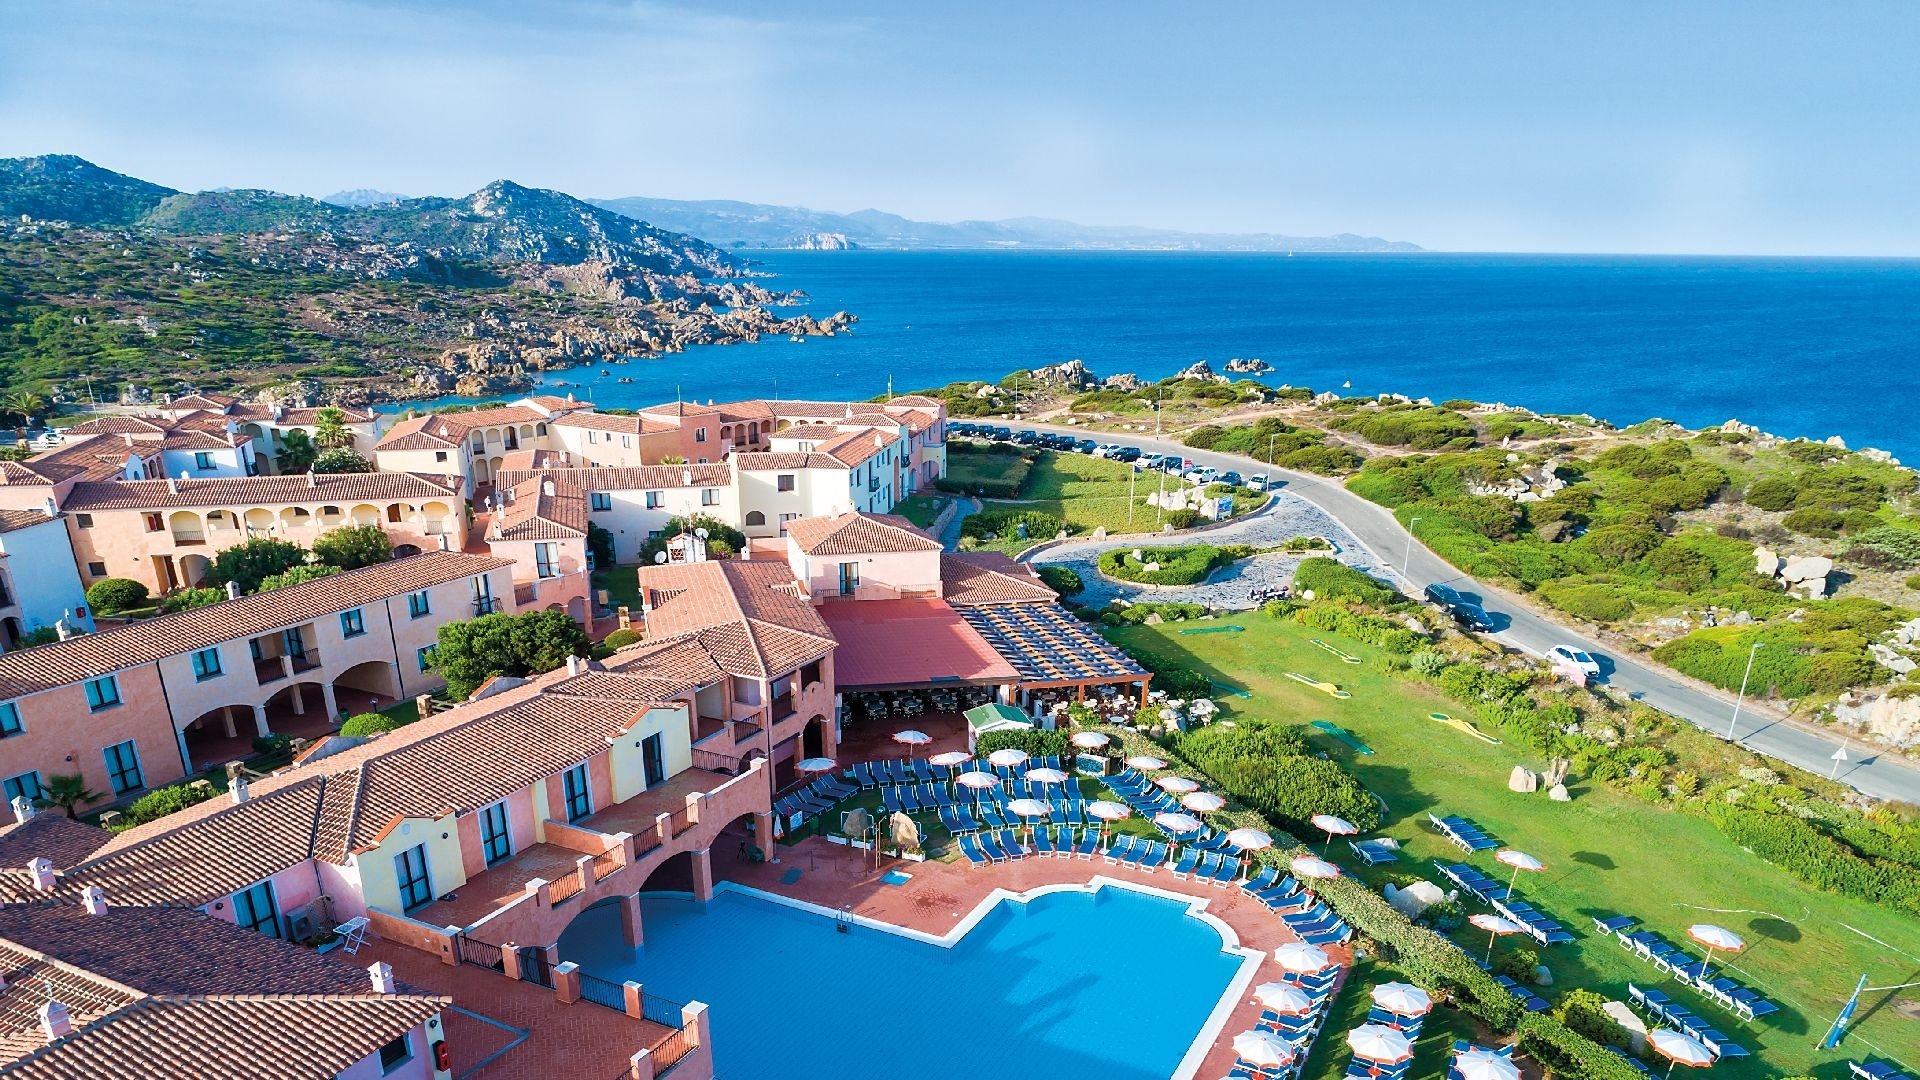 Mangia's Calablu Premium Resort, Santa Teresa di Gallura Sardegna